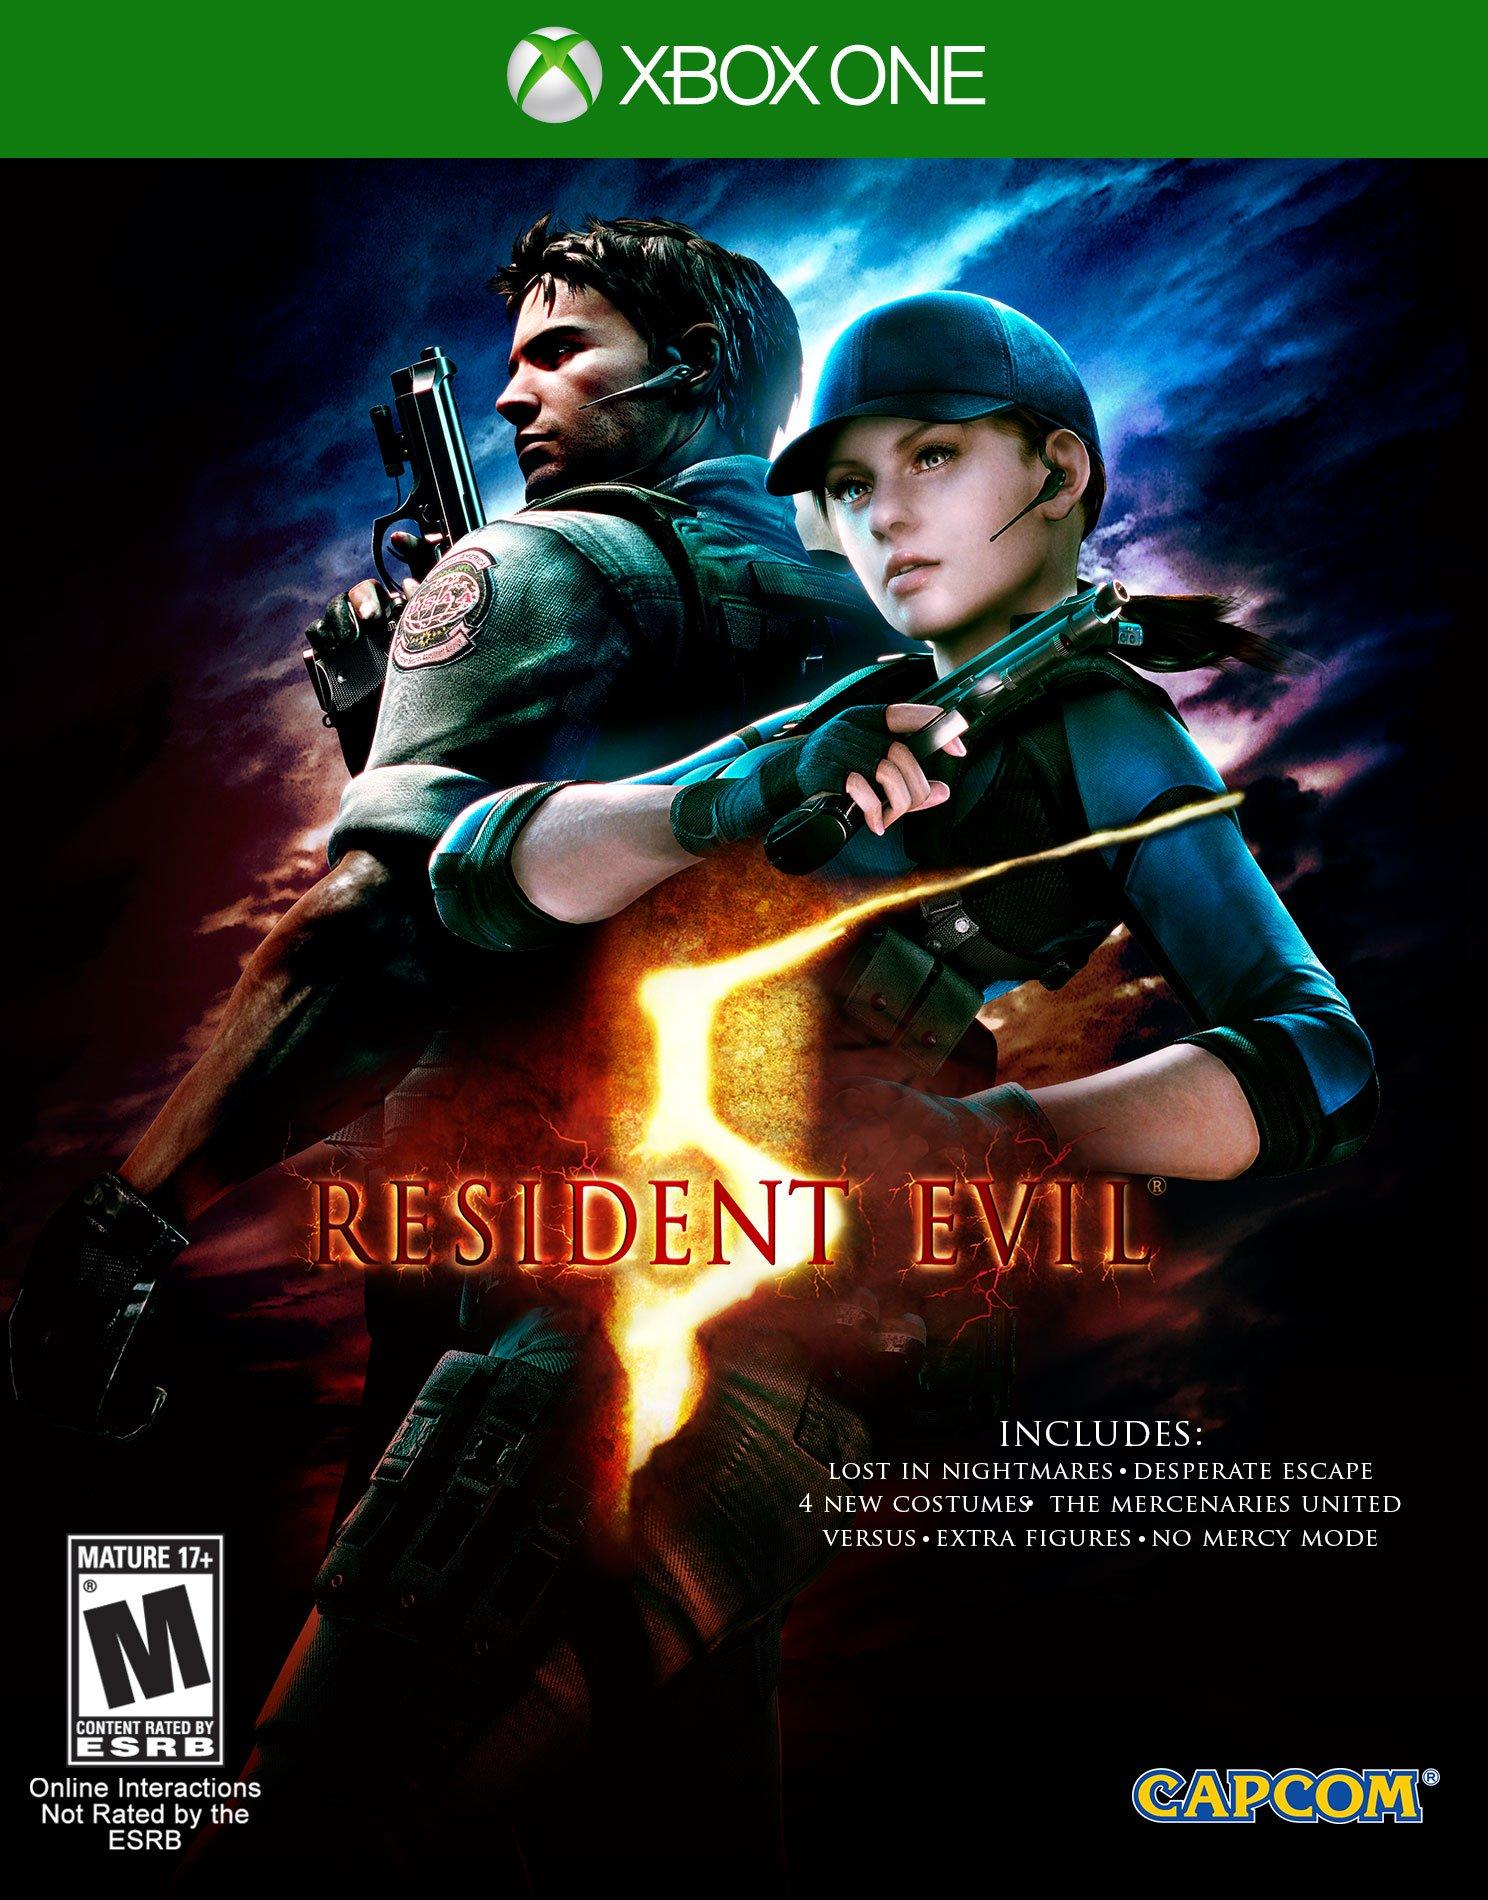 Resident Evil 5 - GameSpot